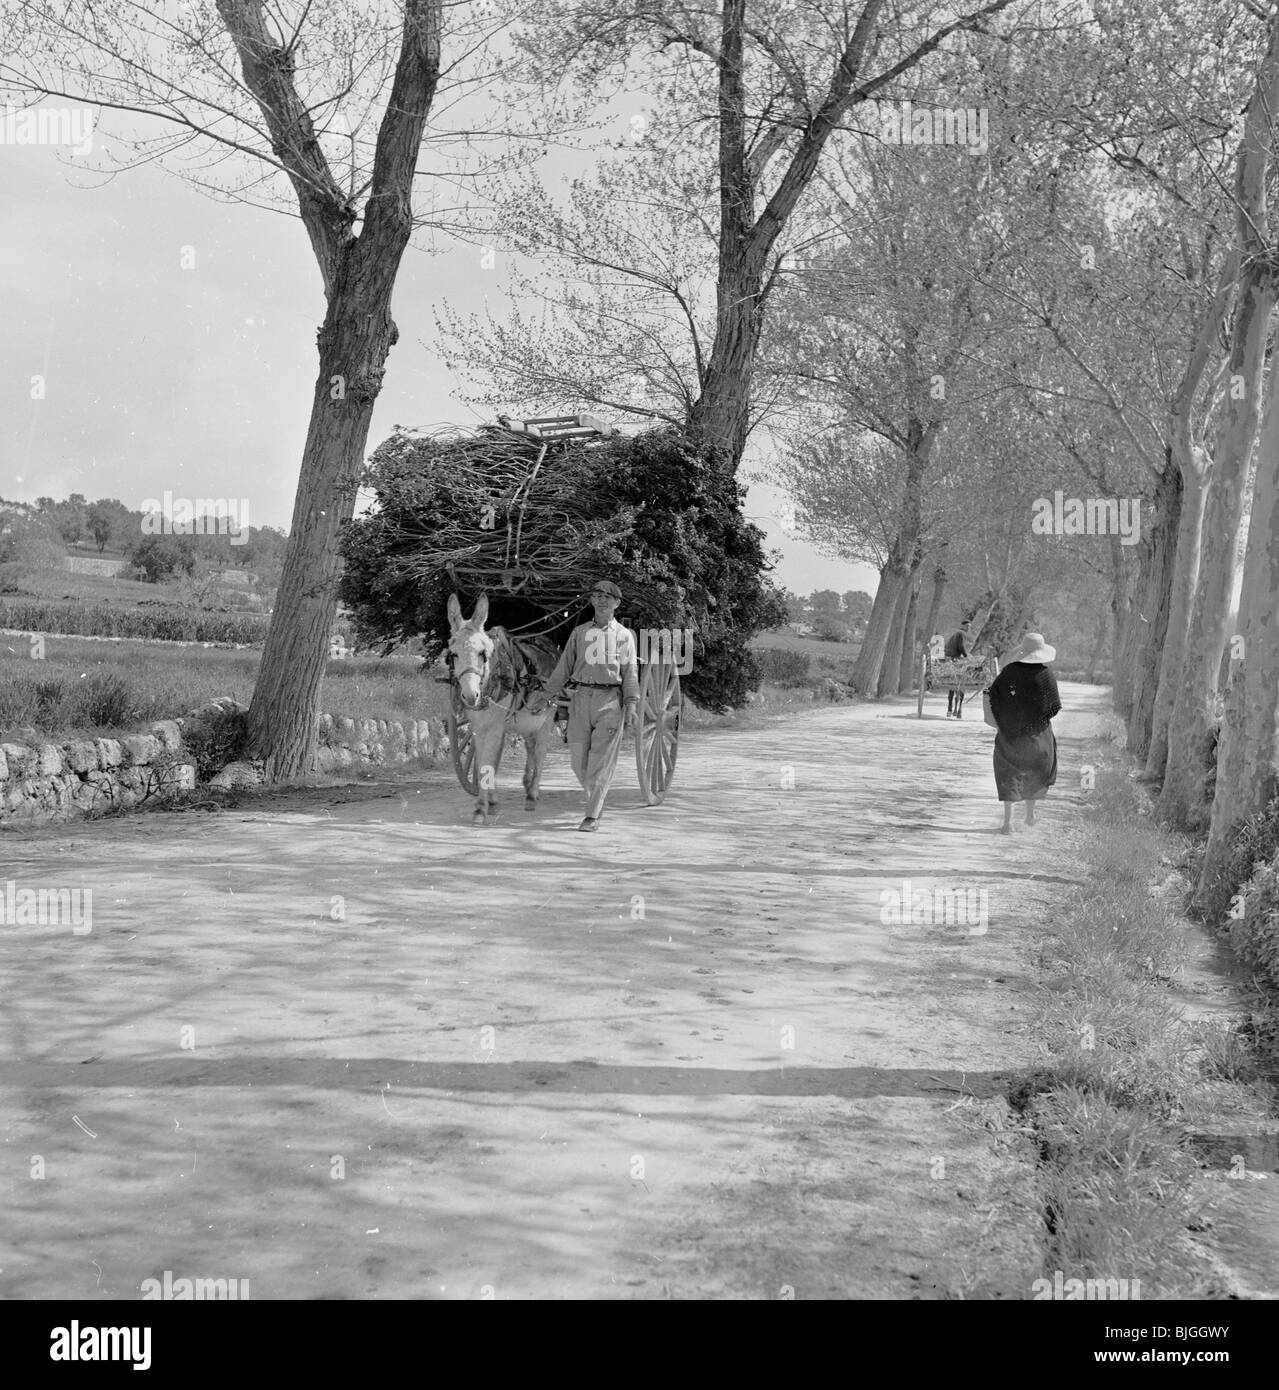 der 1950er Jahre in dieses Geschichtsbild durch J Allan Cash ein Mann mit Pferd und Wagen mit Holz geht auf einen von Bäumen gesäumten Weg geladen. Stockfoto